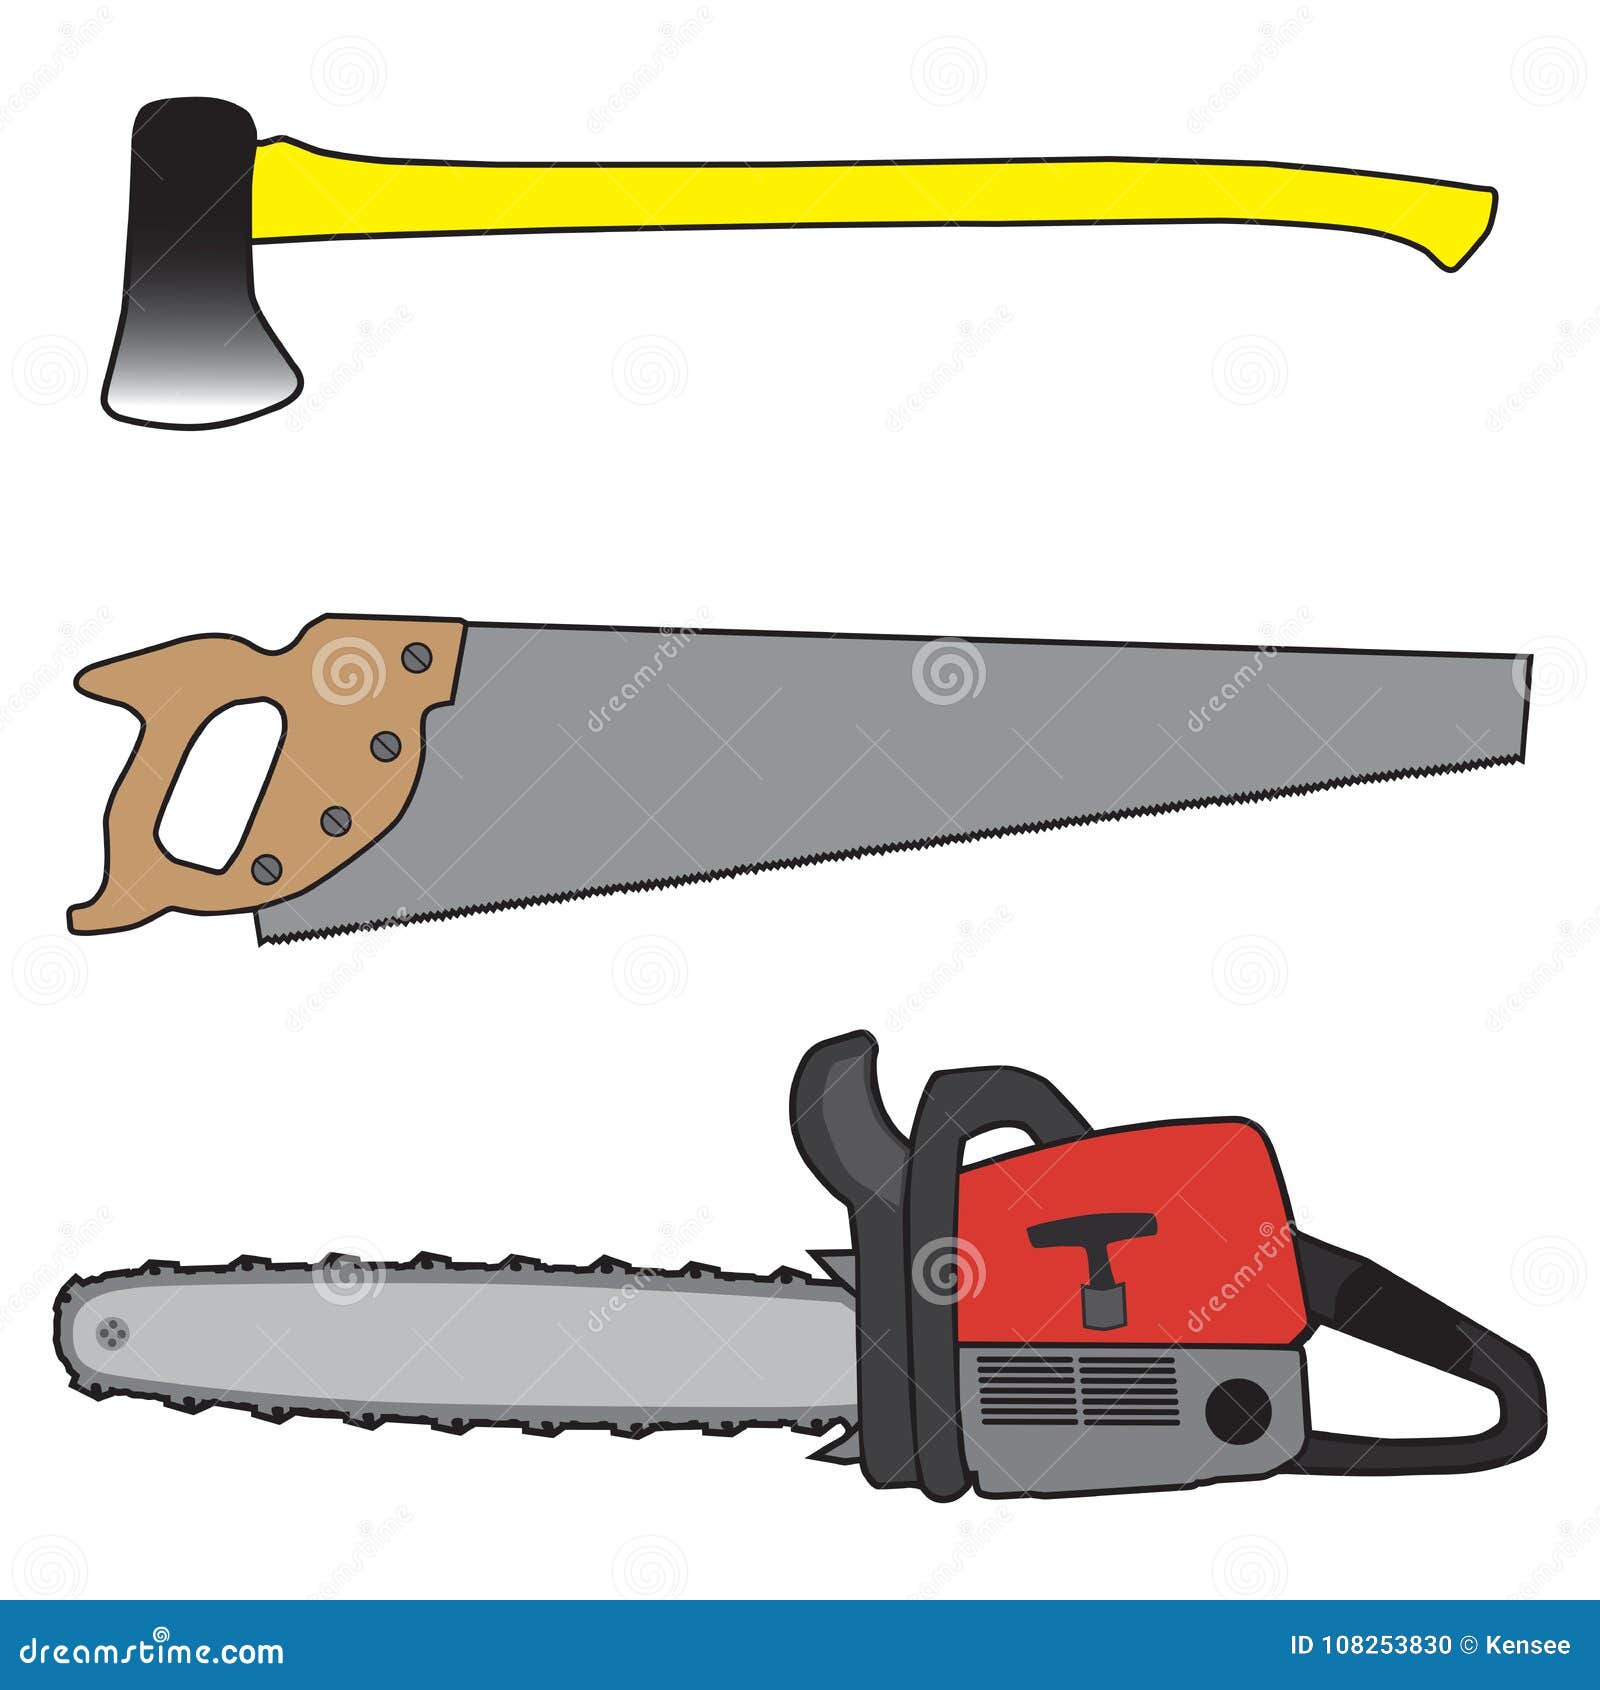 Tres herramientas ilustración del de instrumentos - 108253830